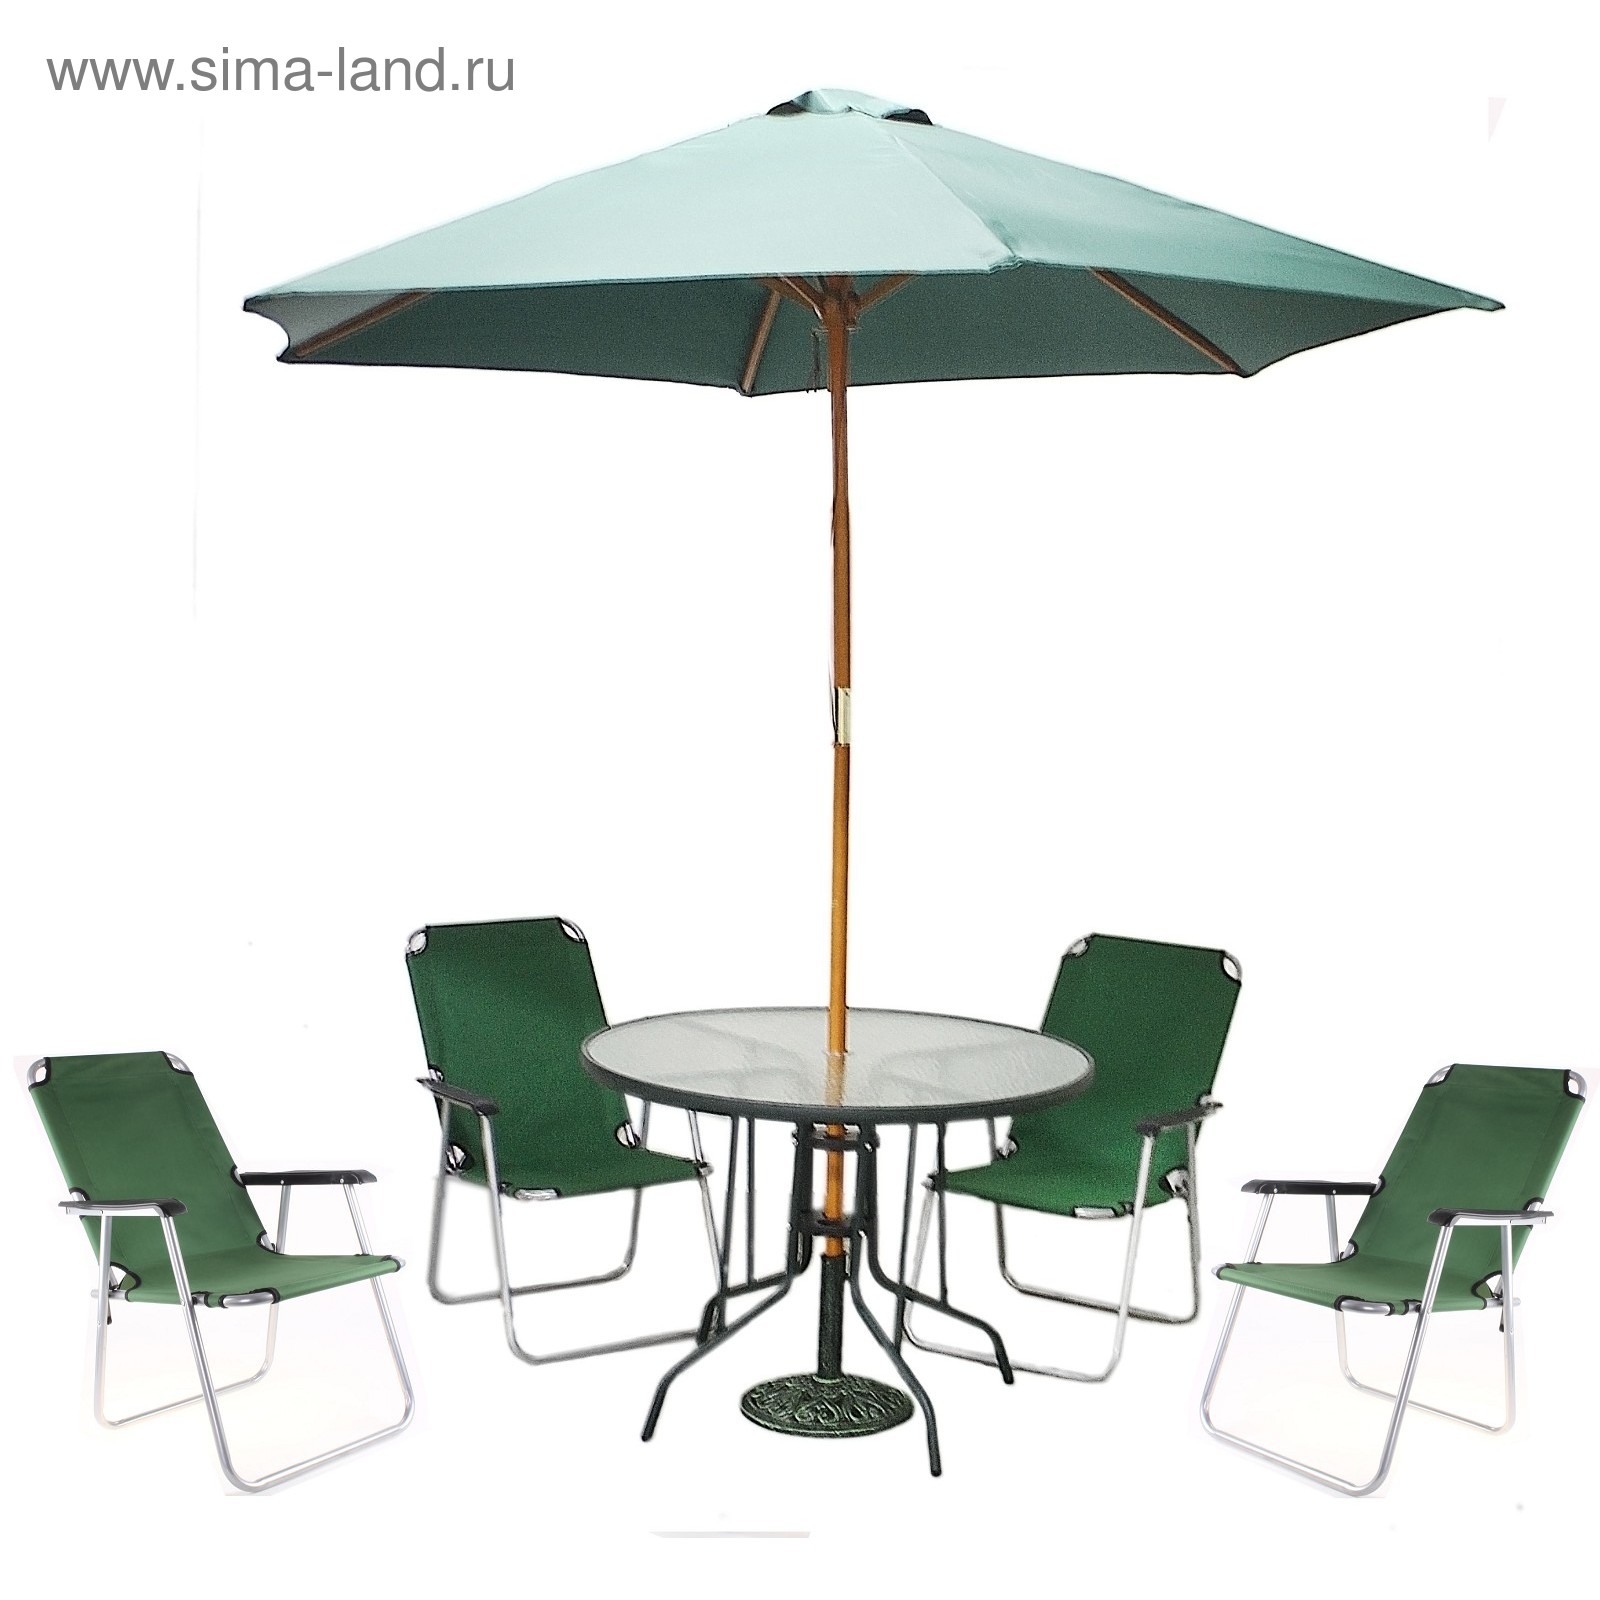 Комплект мебели Диорит XXI ccs1007 (зонт, стол, 2 стула), зелeный